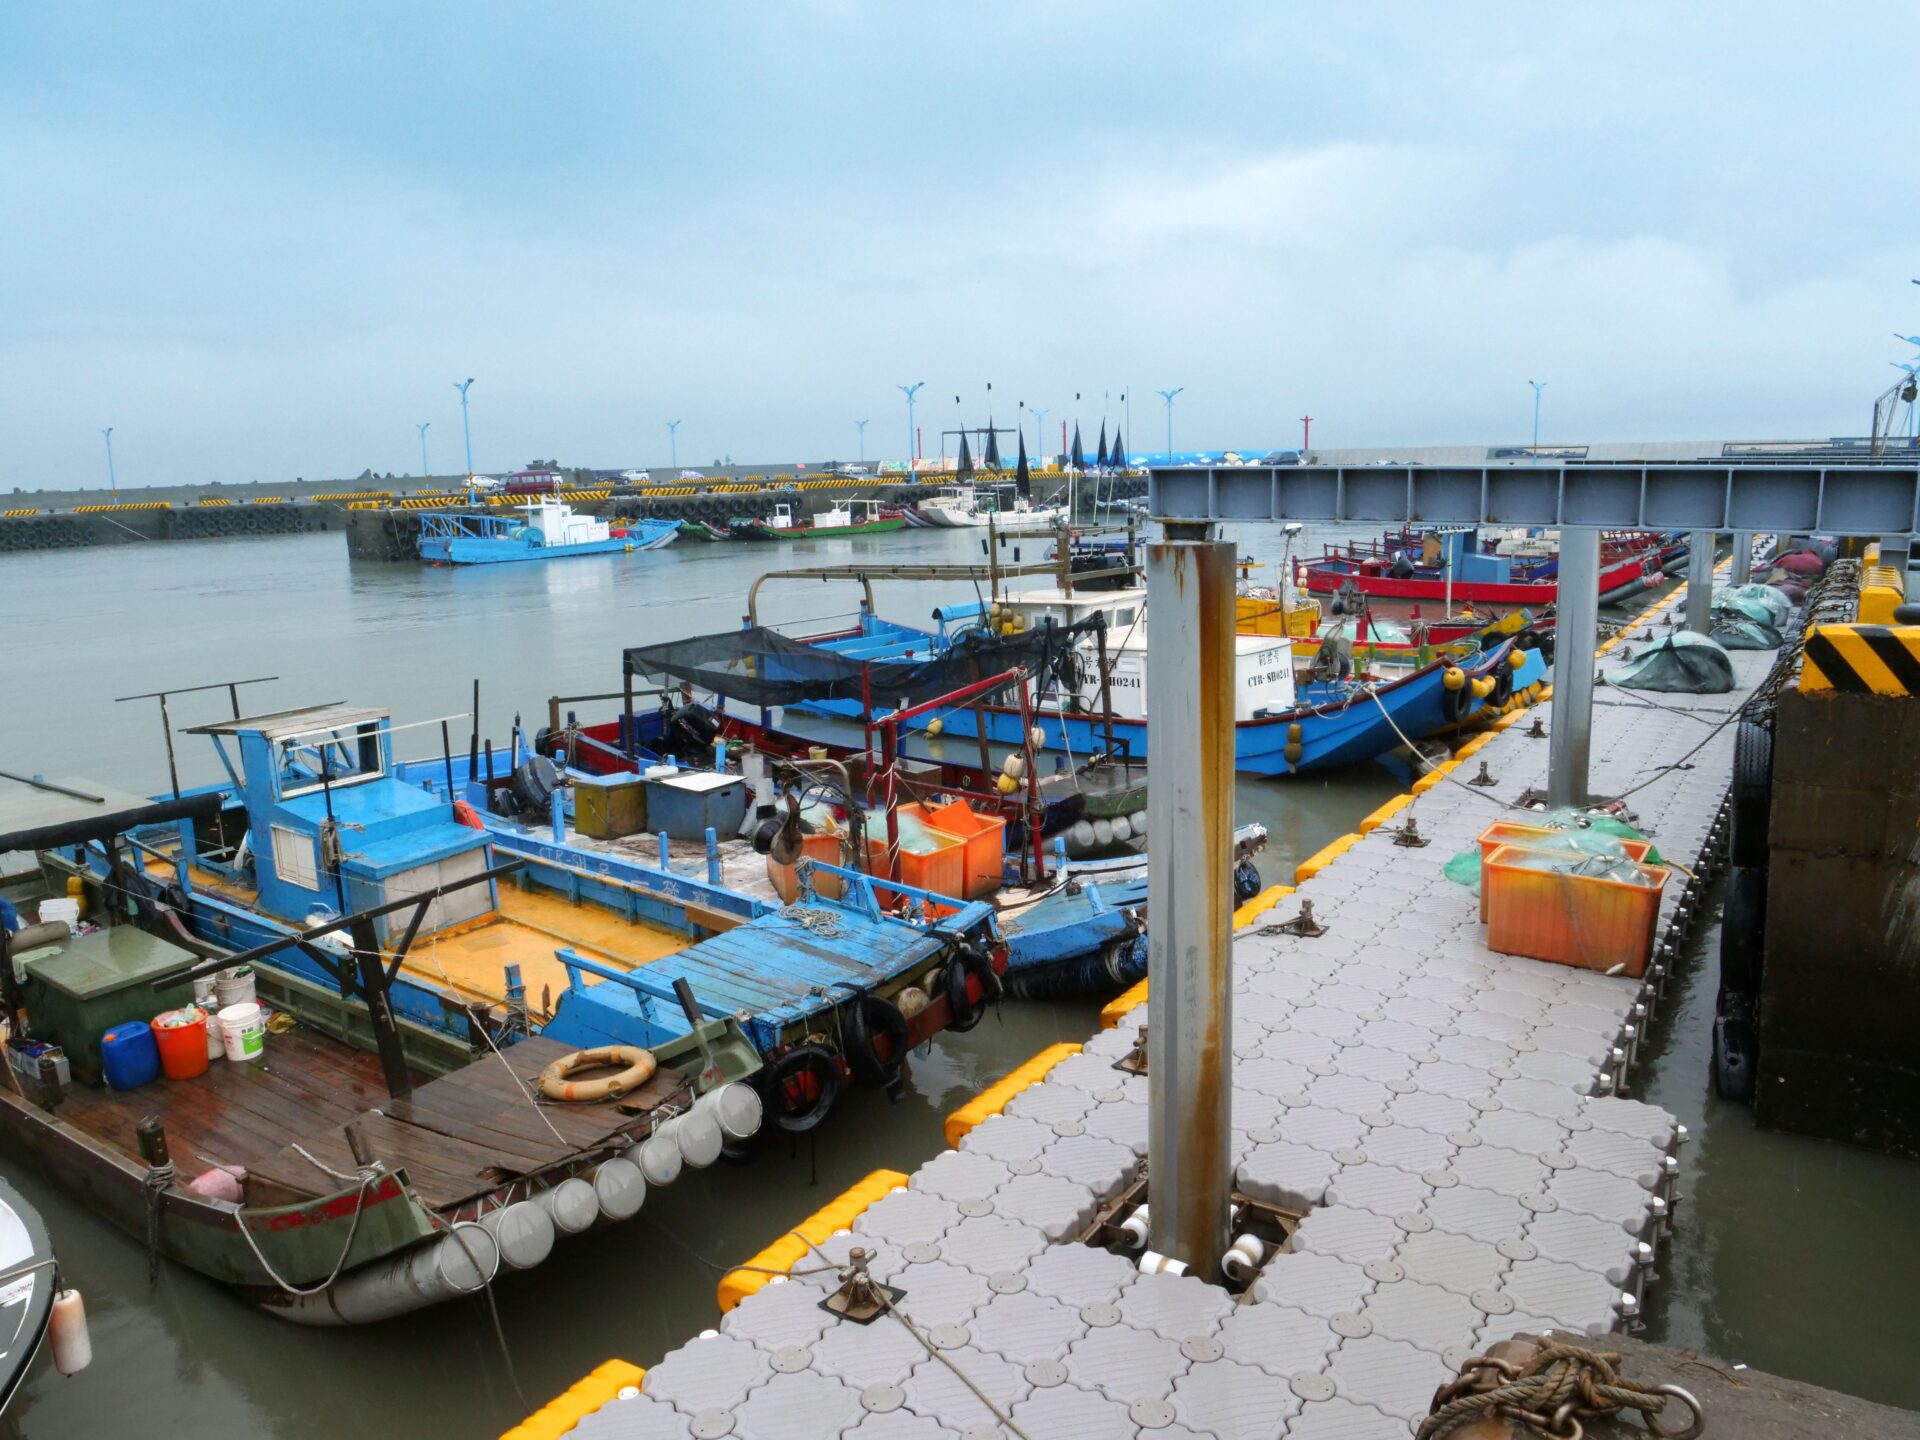 竹縣「綠色海岸風景遊憩計畫」新豐坡頭漁港將規劃設計南北堤延伸   提升船舶停泊安全與空間